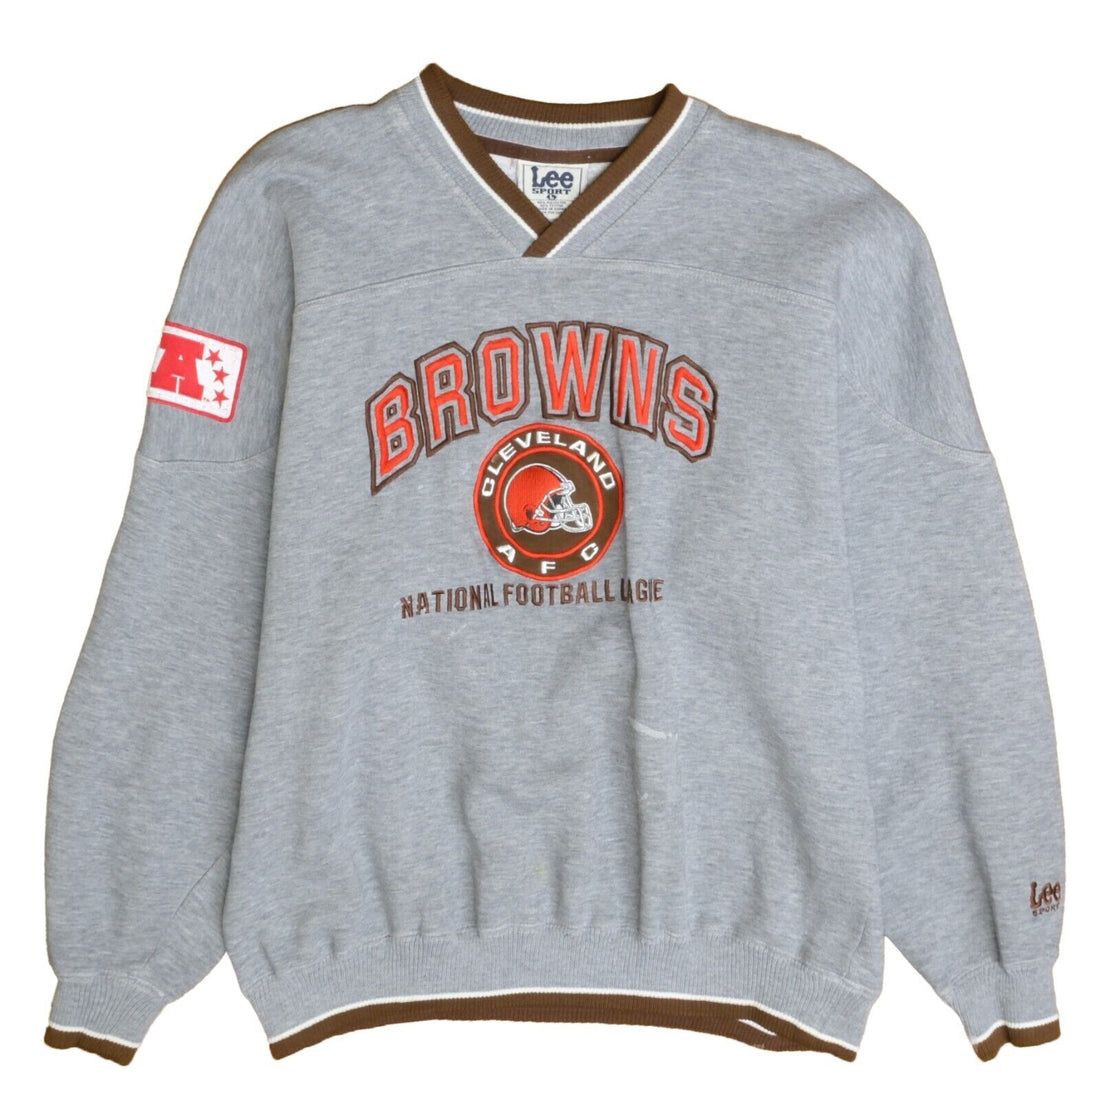 Vintage Cleveland Browns Lee Sweatshirt Crewneck Size Large NFL